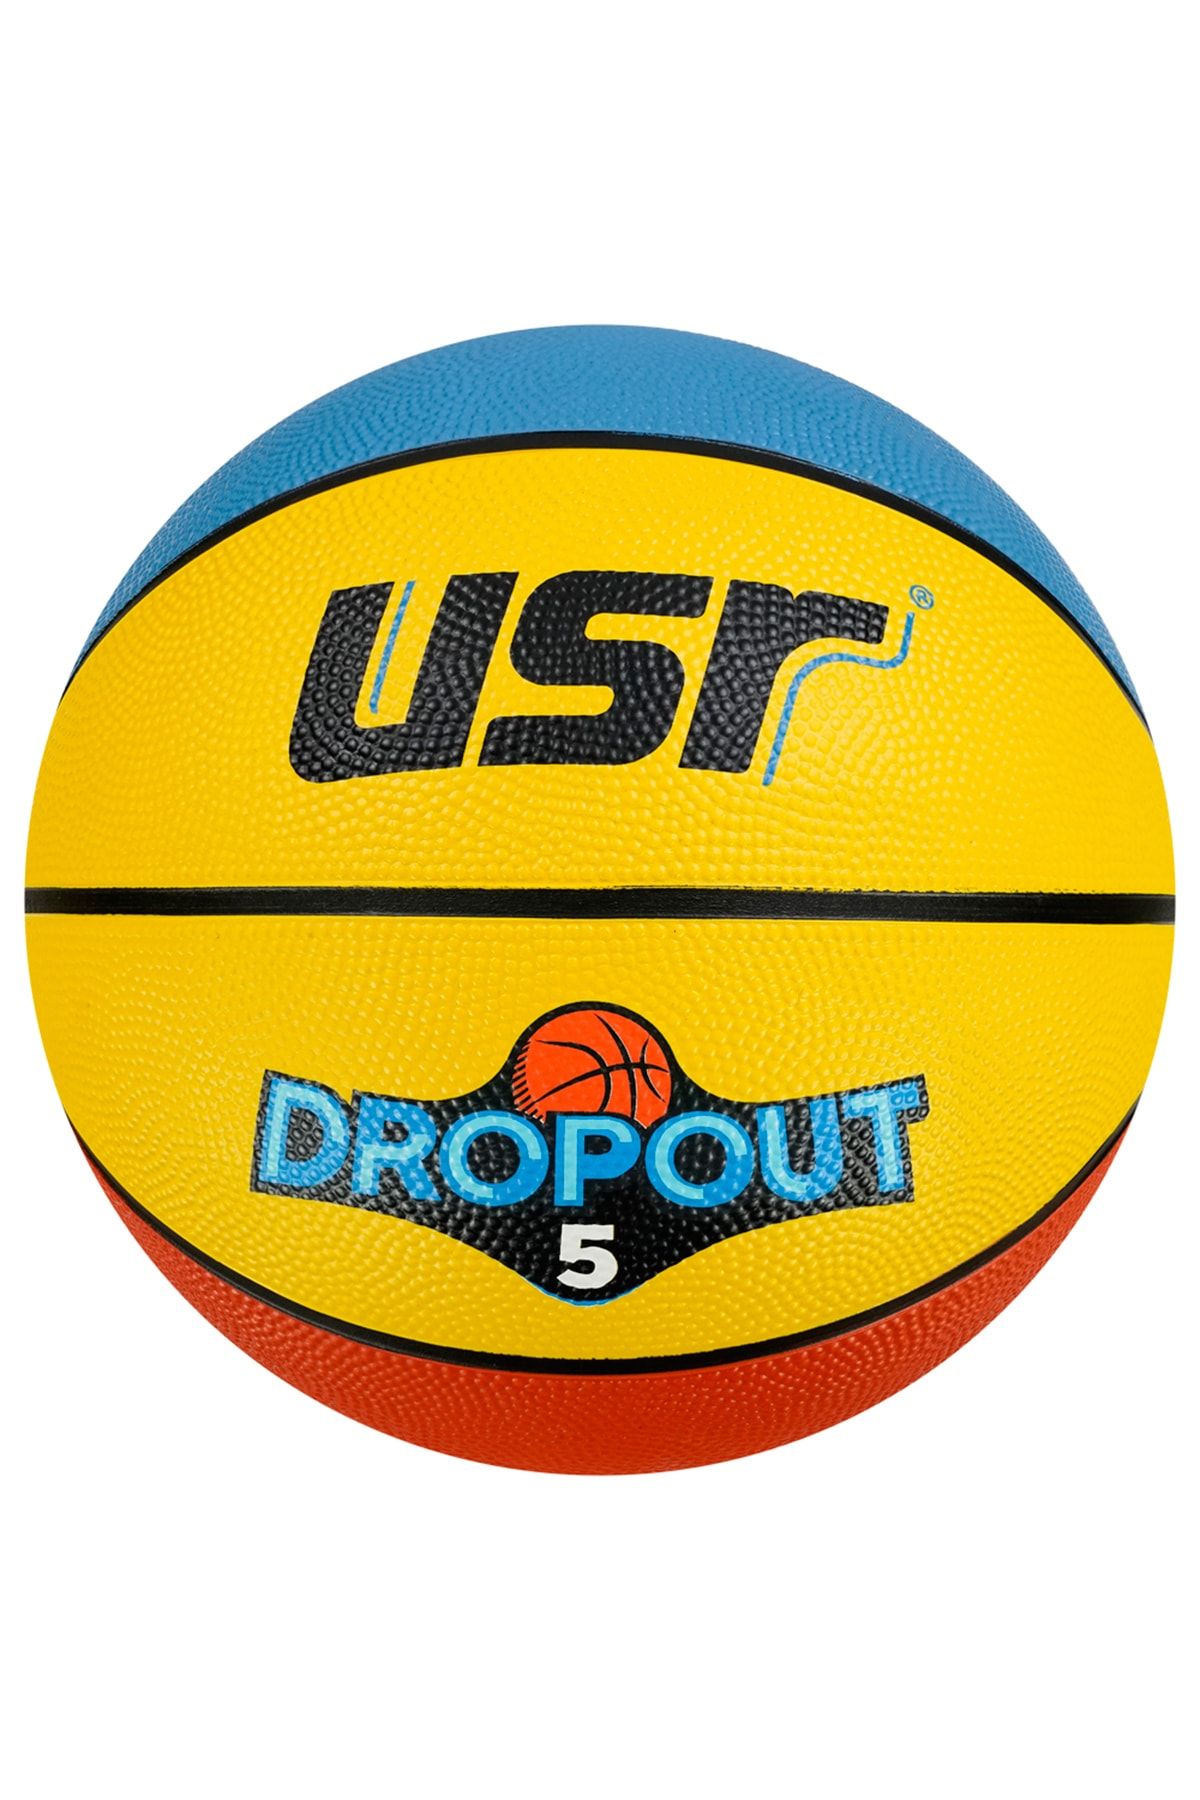 Usr Dropout5.2 5 No Basketbol Topu